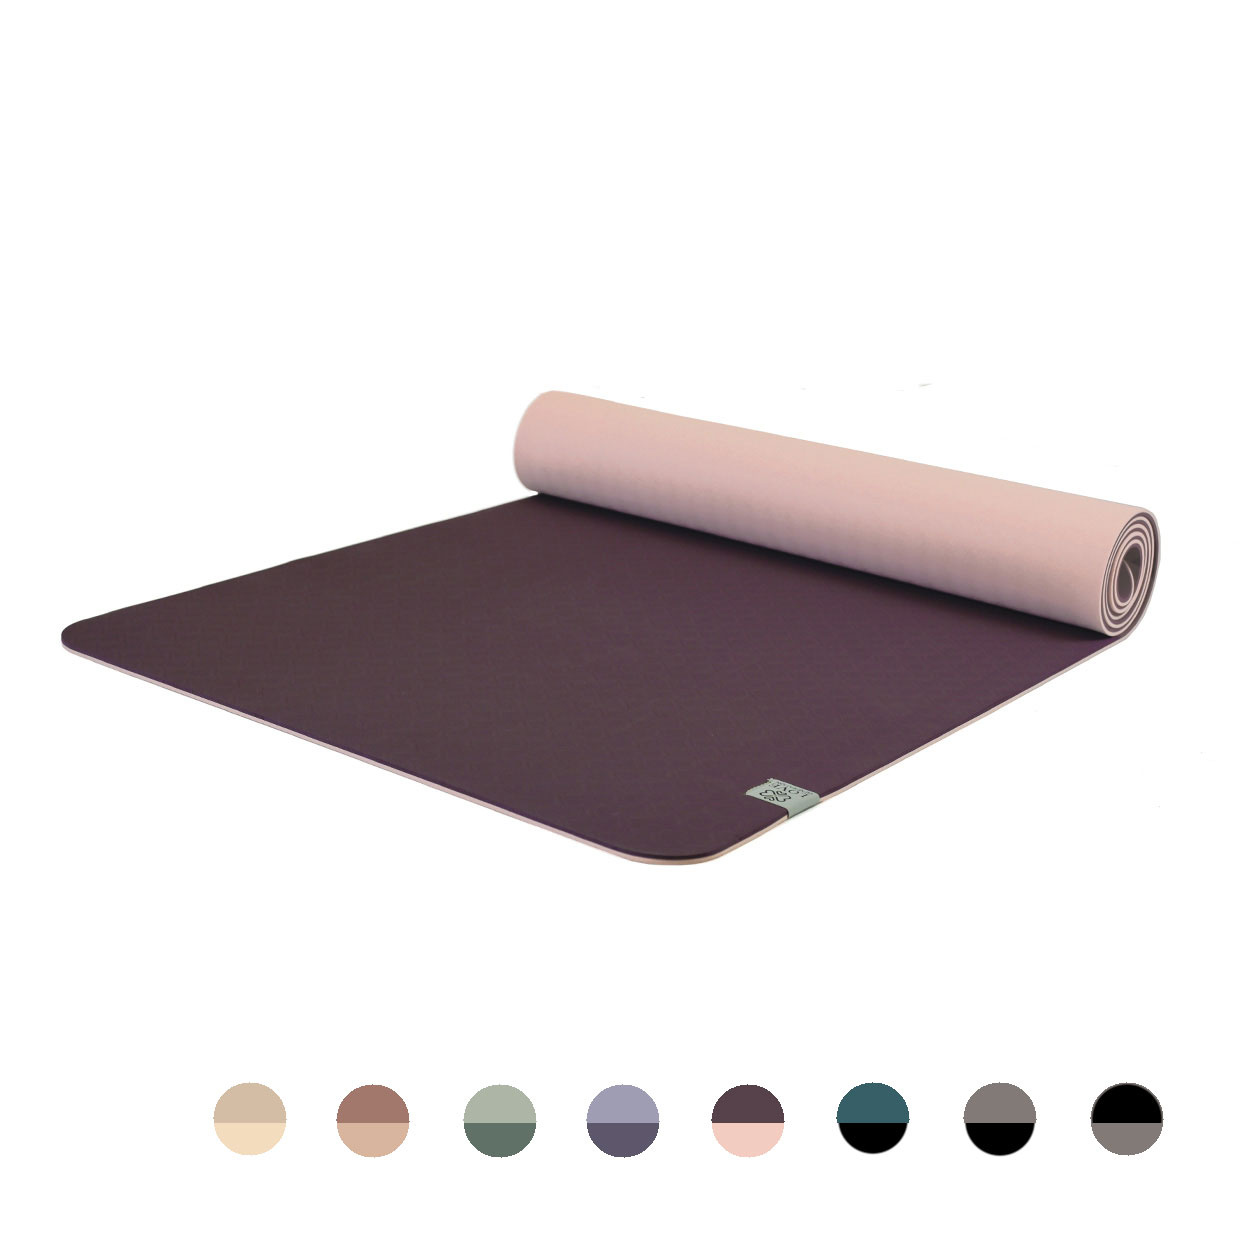 Eco Friendly Non-Slip Yoga Matt Purple Color, Yoga Mat is perfect